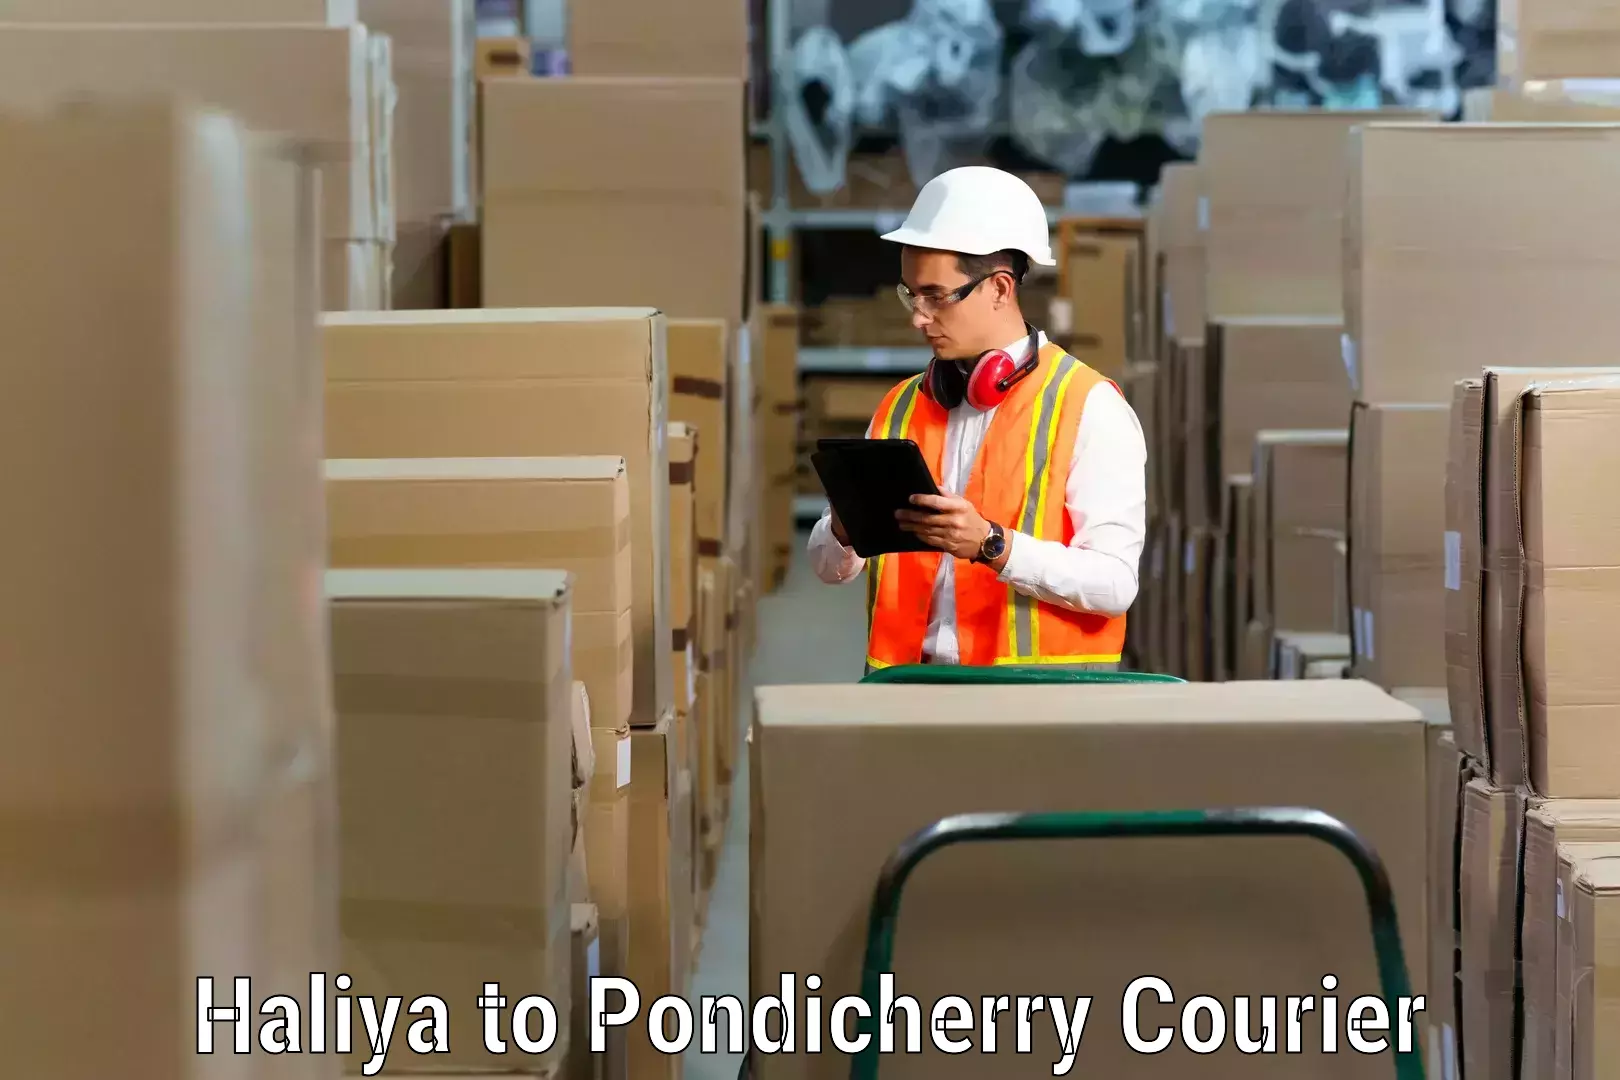 Furniture transport solutions Haliya to Pondicherry University